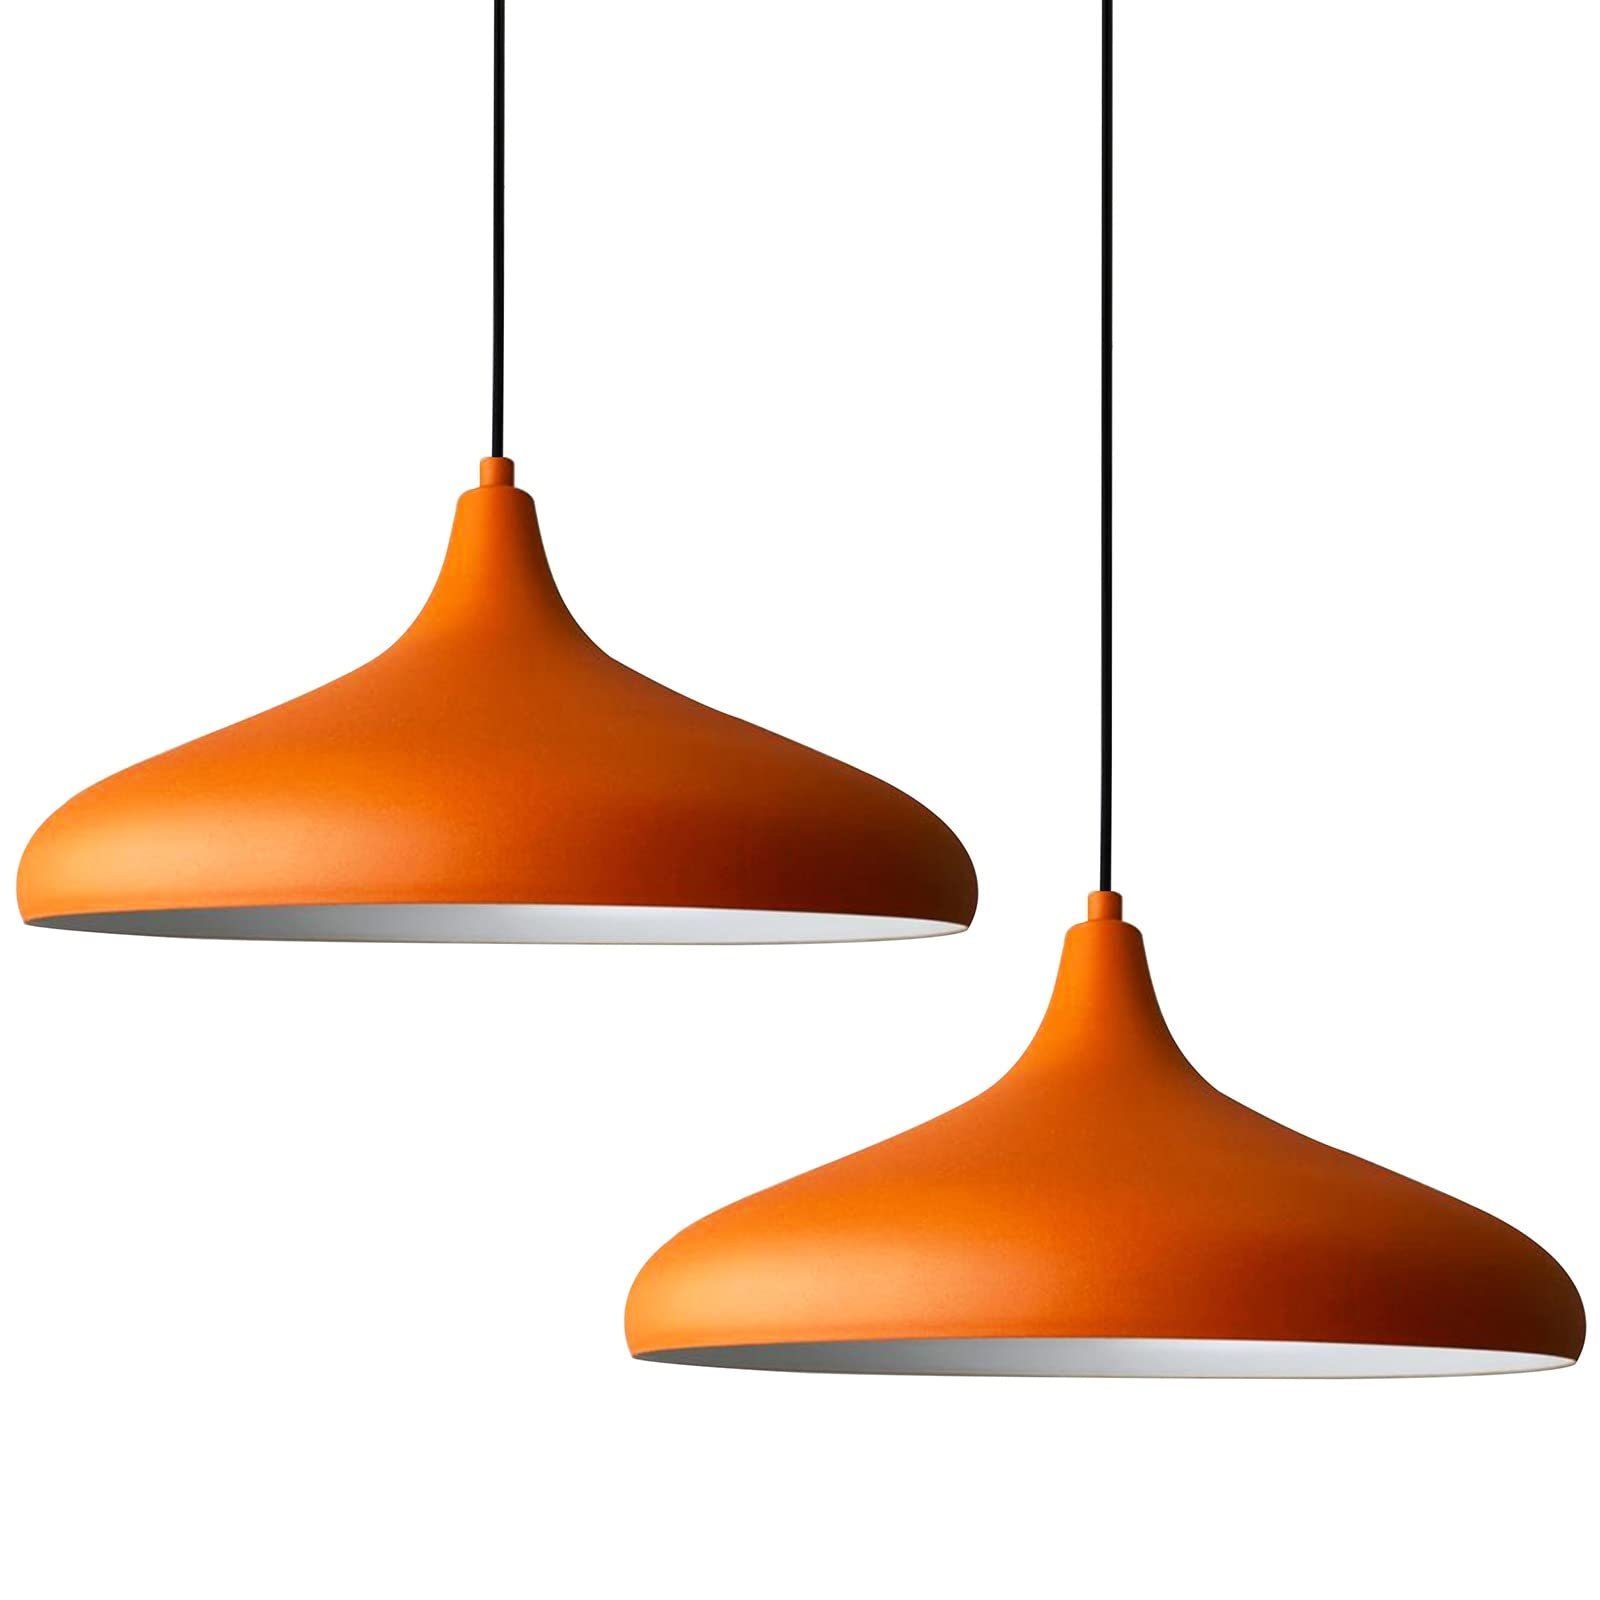 Orange Lampe Snöl - Perfekte Lichtquelle